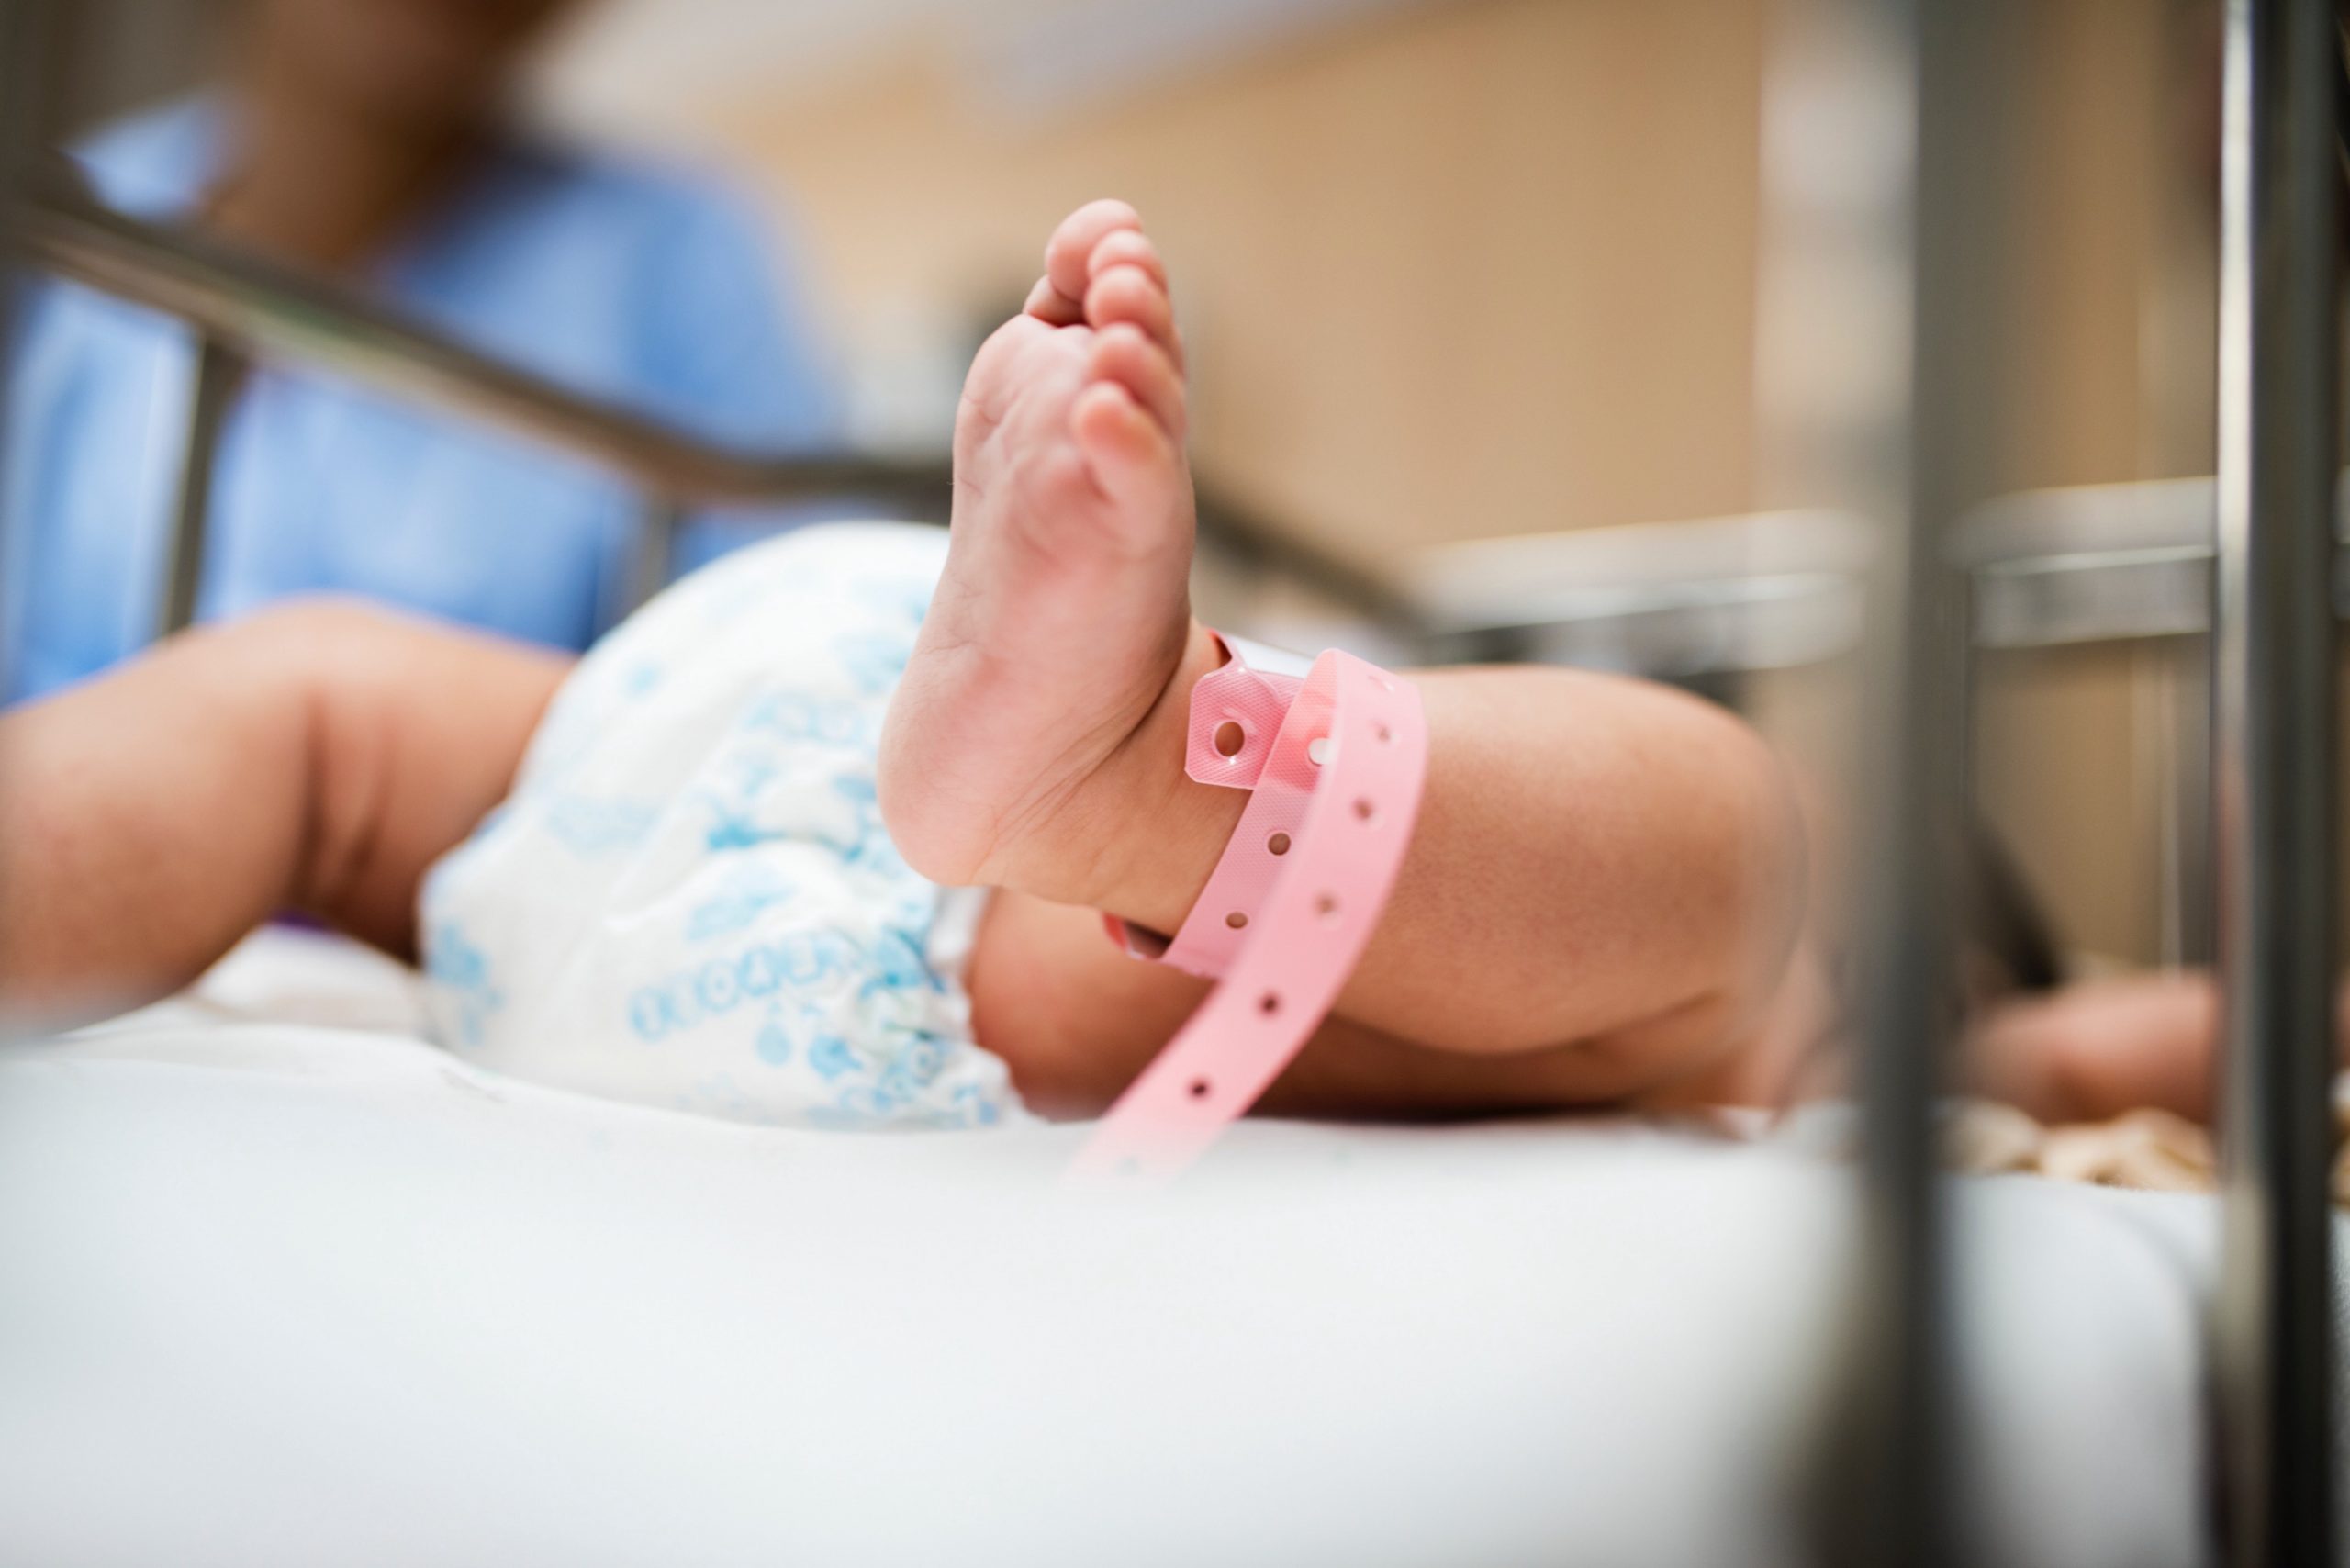 "Itu Bukan Anak Saya" - Cemas Tag Kaki Nama Ibu Lain, Bayi Tertukar Akibat Cuai 4